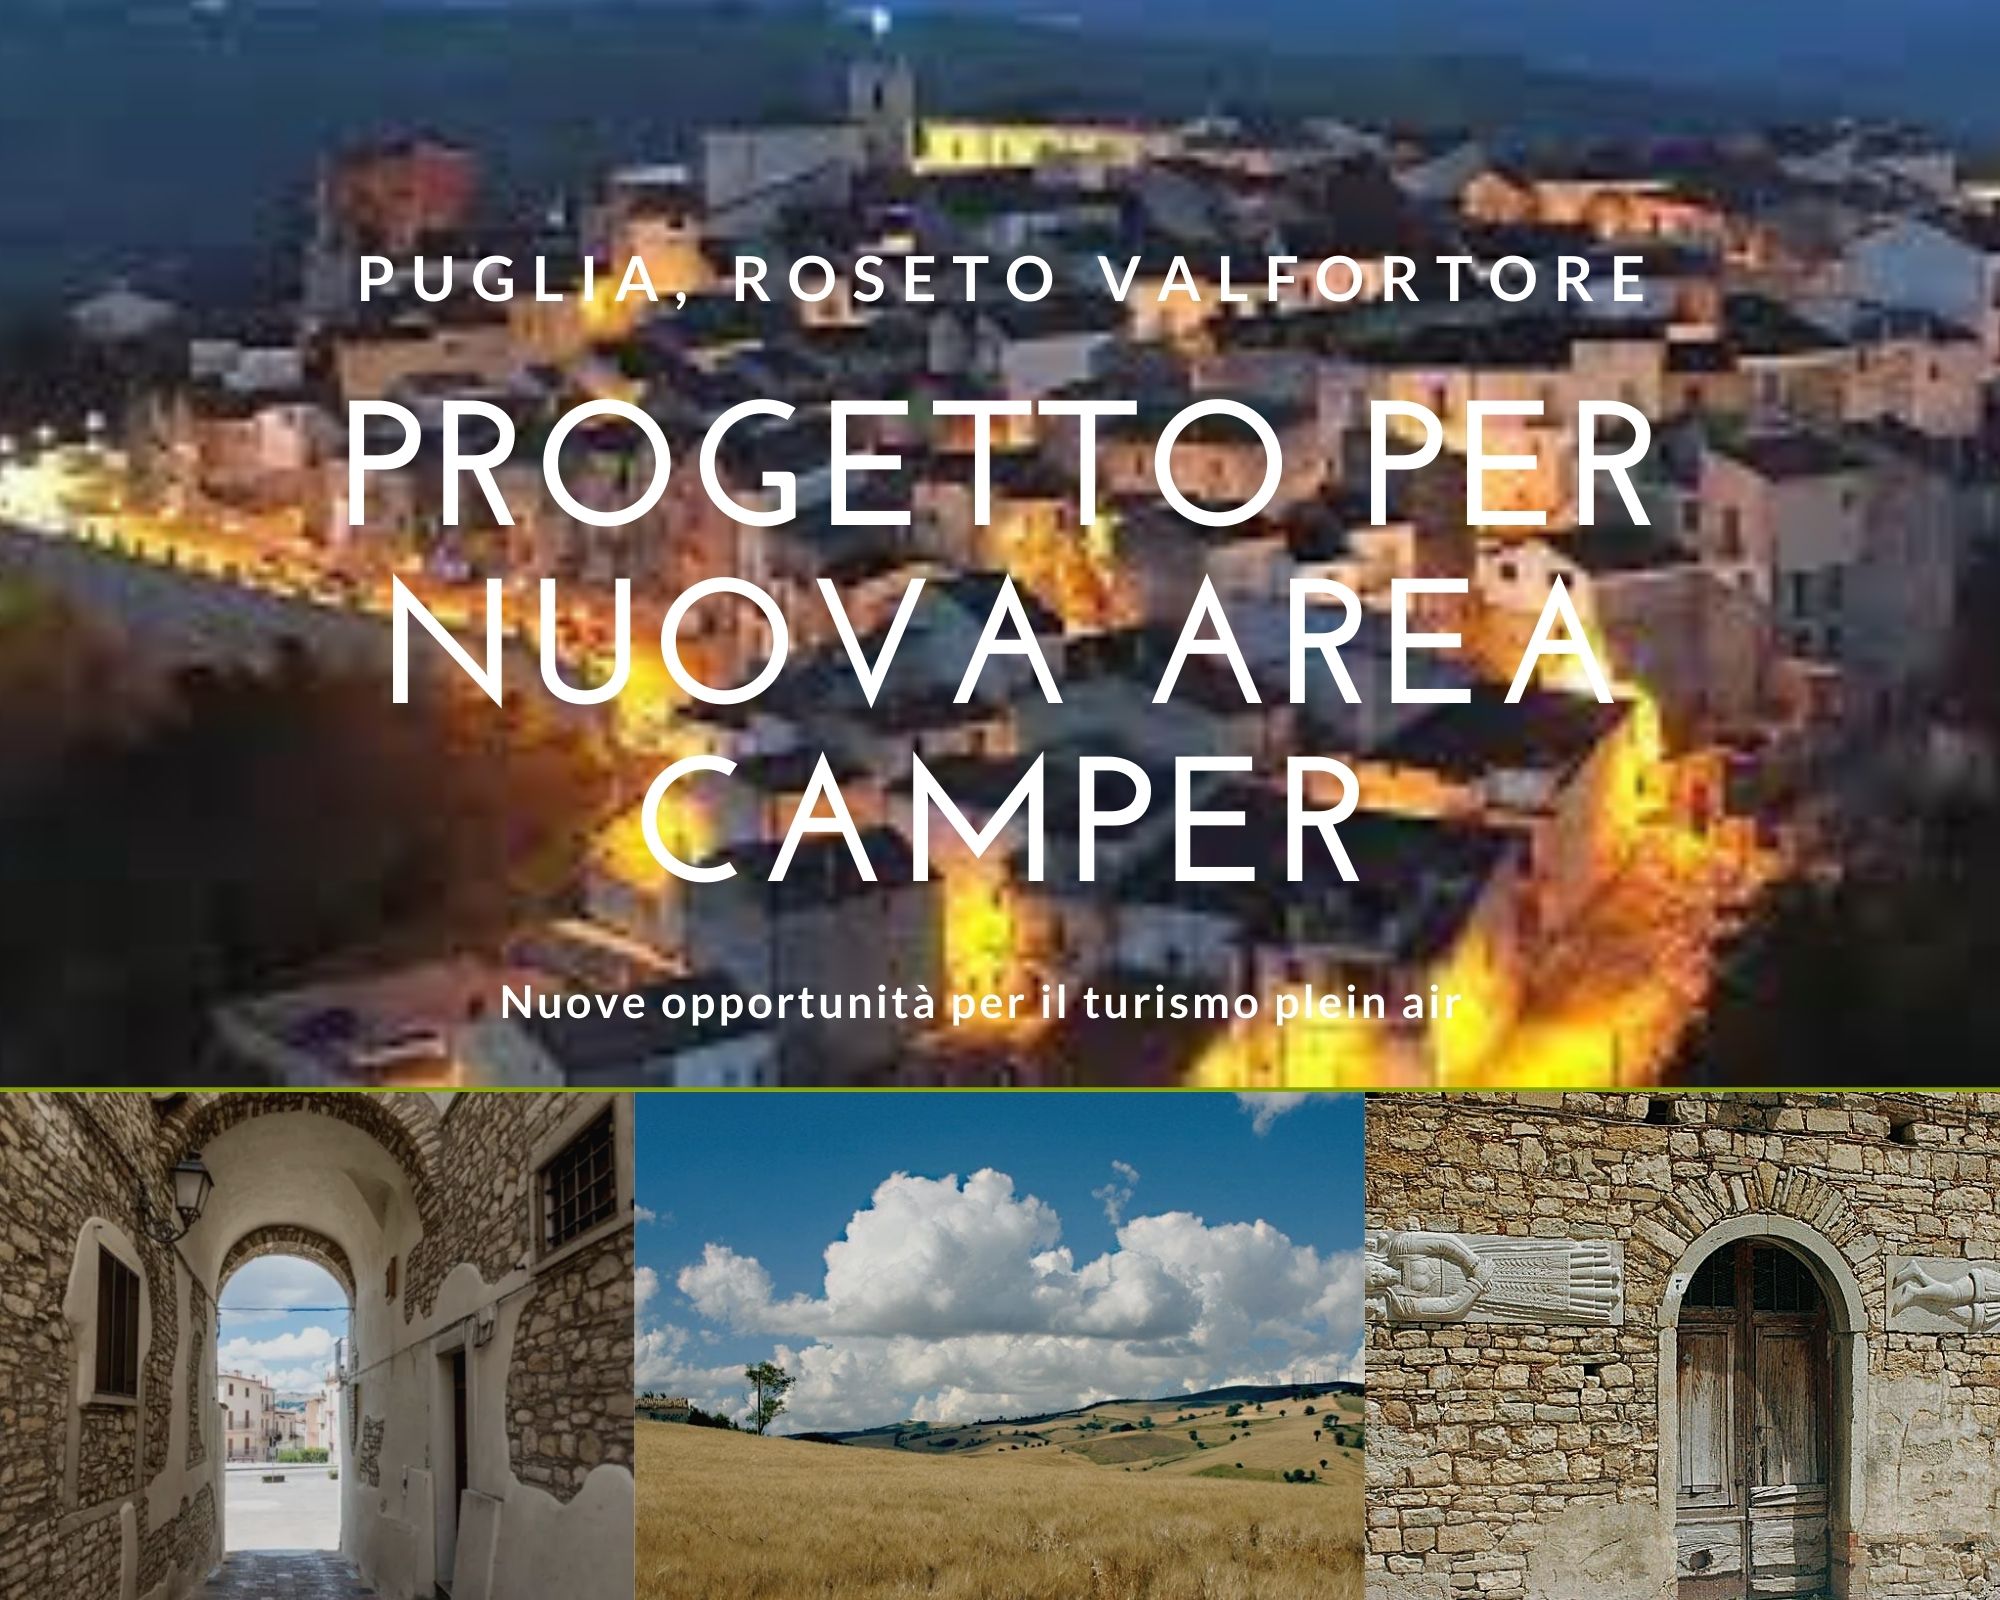 Puglia, Roseto Valfortore: in arrivo nuova area camper